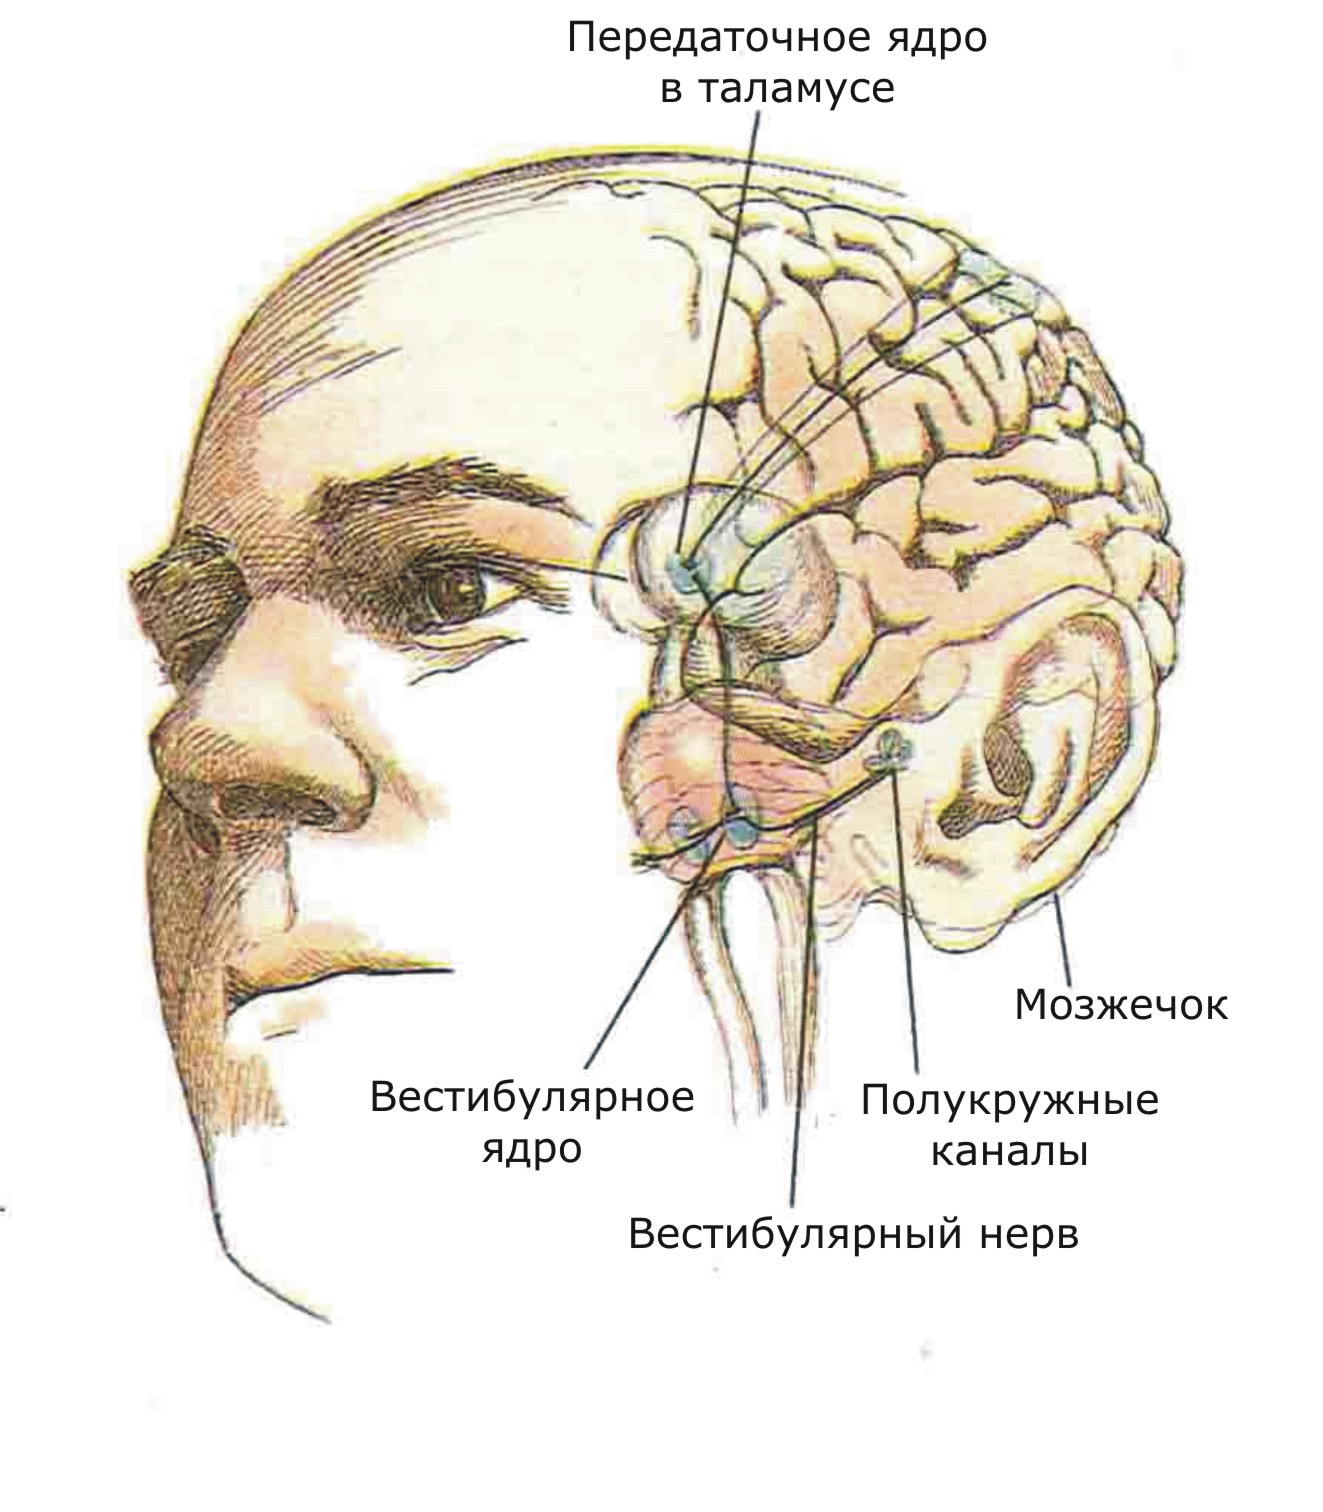 Показаны связи, идущие от первичных рецепторов преддверия внутреннего уха (вестибулярного аппарата) к ядрам ствола мозга и таламуса. Эта информация, по-видимому, не имеет путей для передачи в кору большого мозга